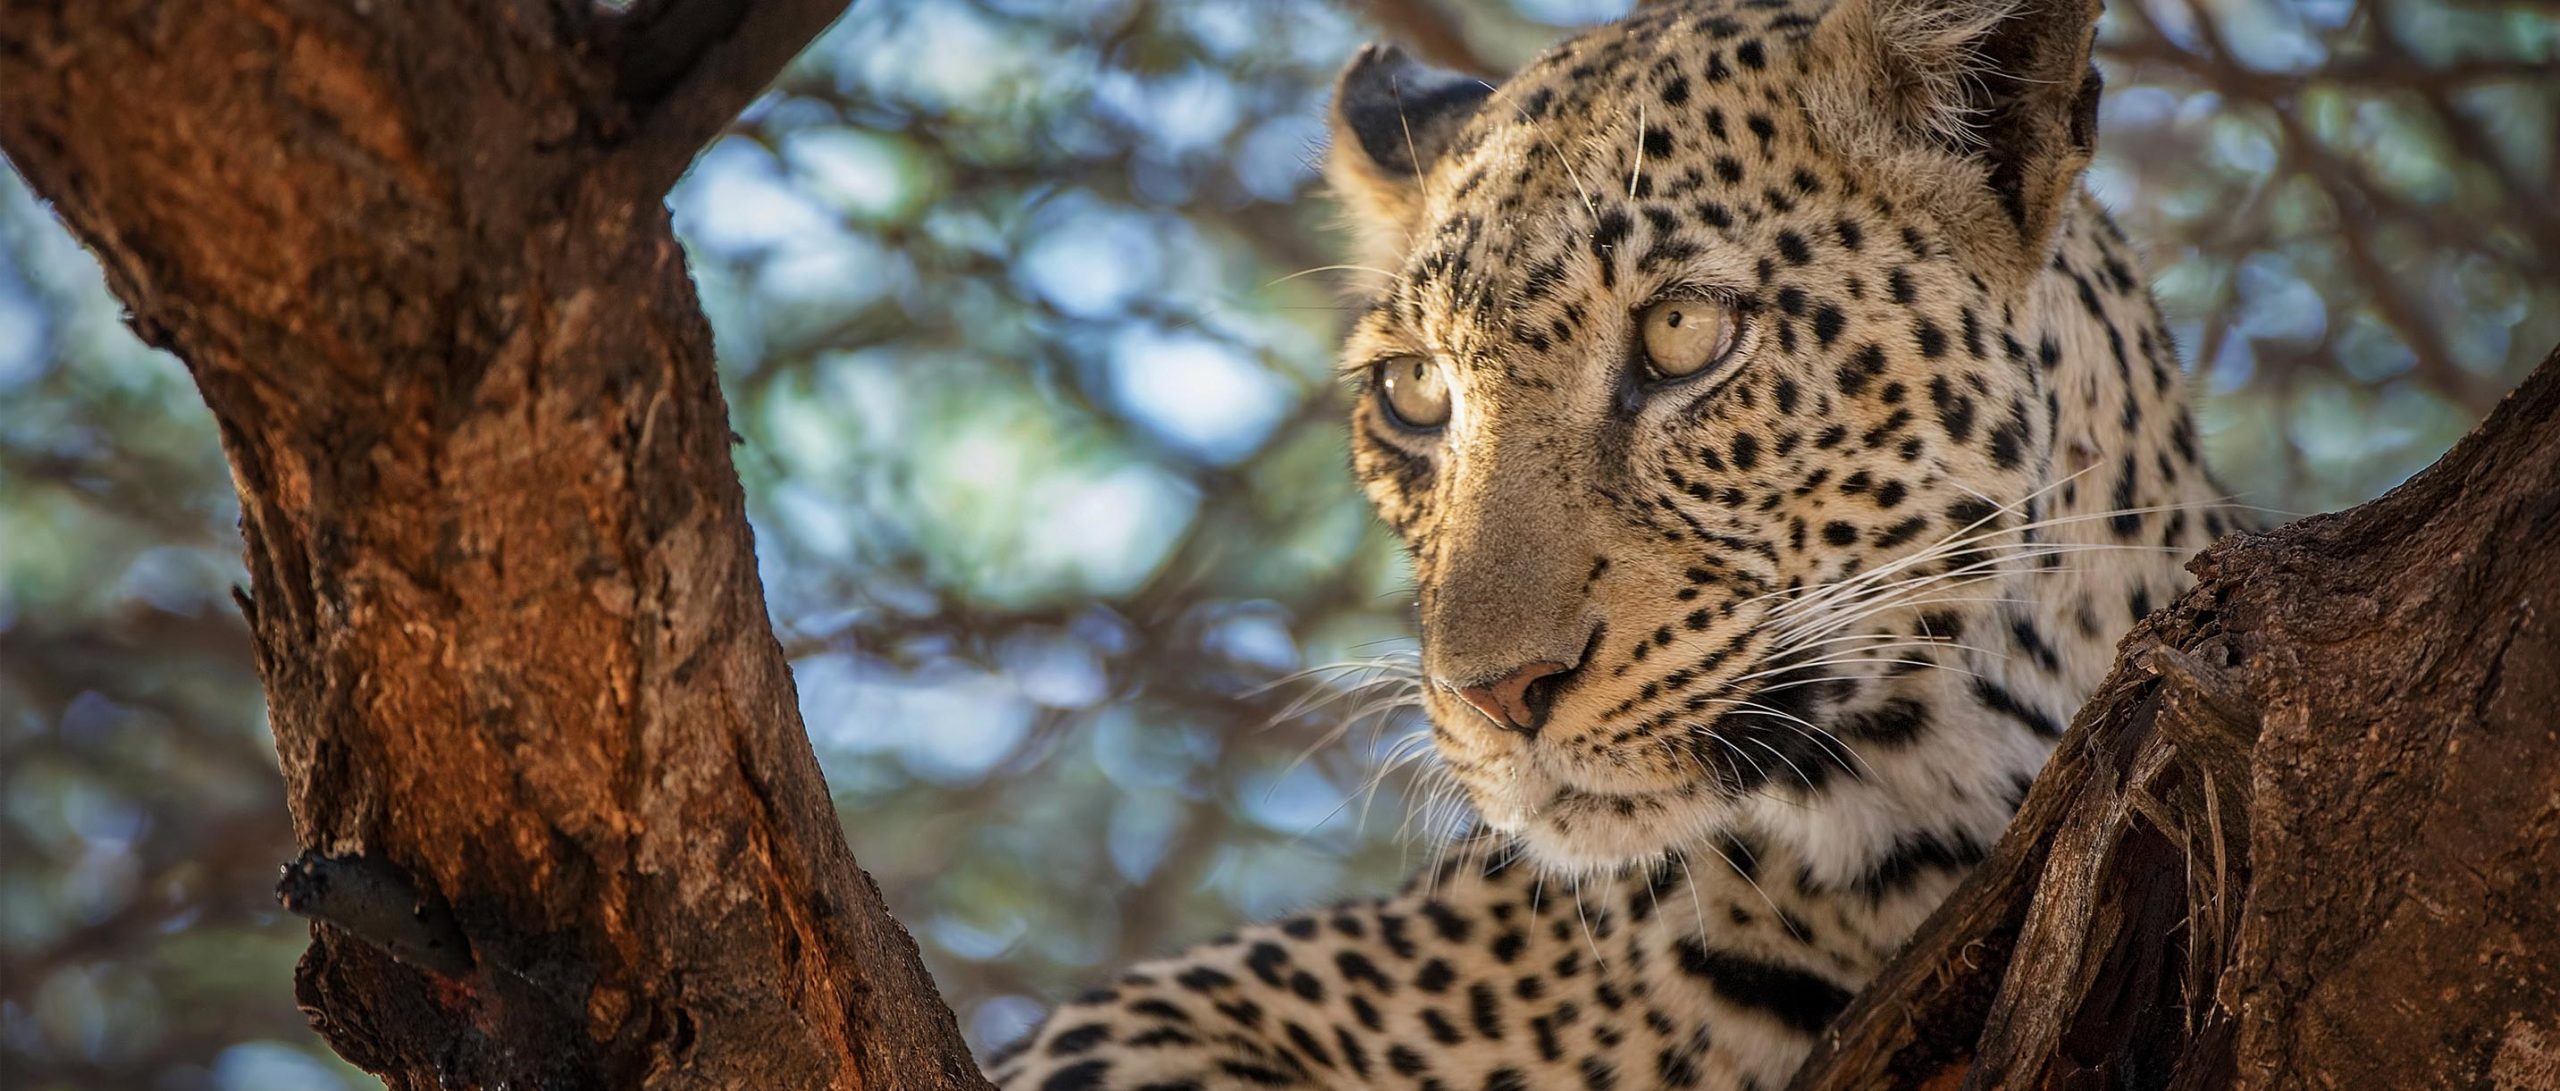 Νότια Αφρική: Λεοπάρδαλη έστησε την ενέδρα της ψηλά σε ένα δέντρο και… όρμησε σε αντιλόπη  (βίντεο)